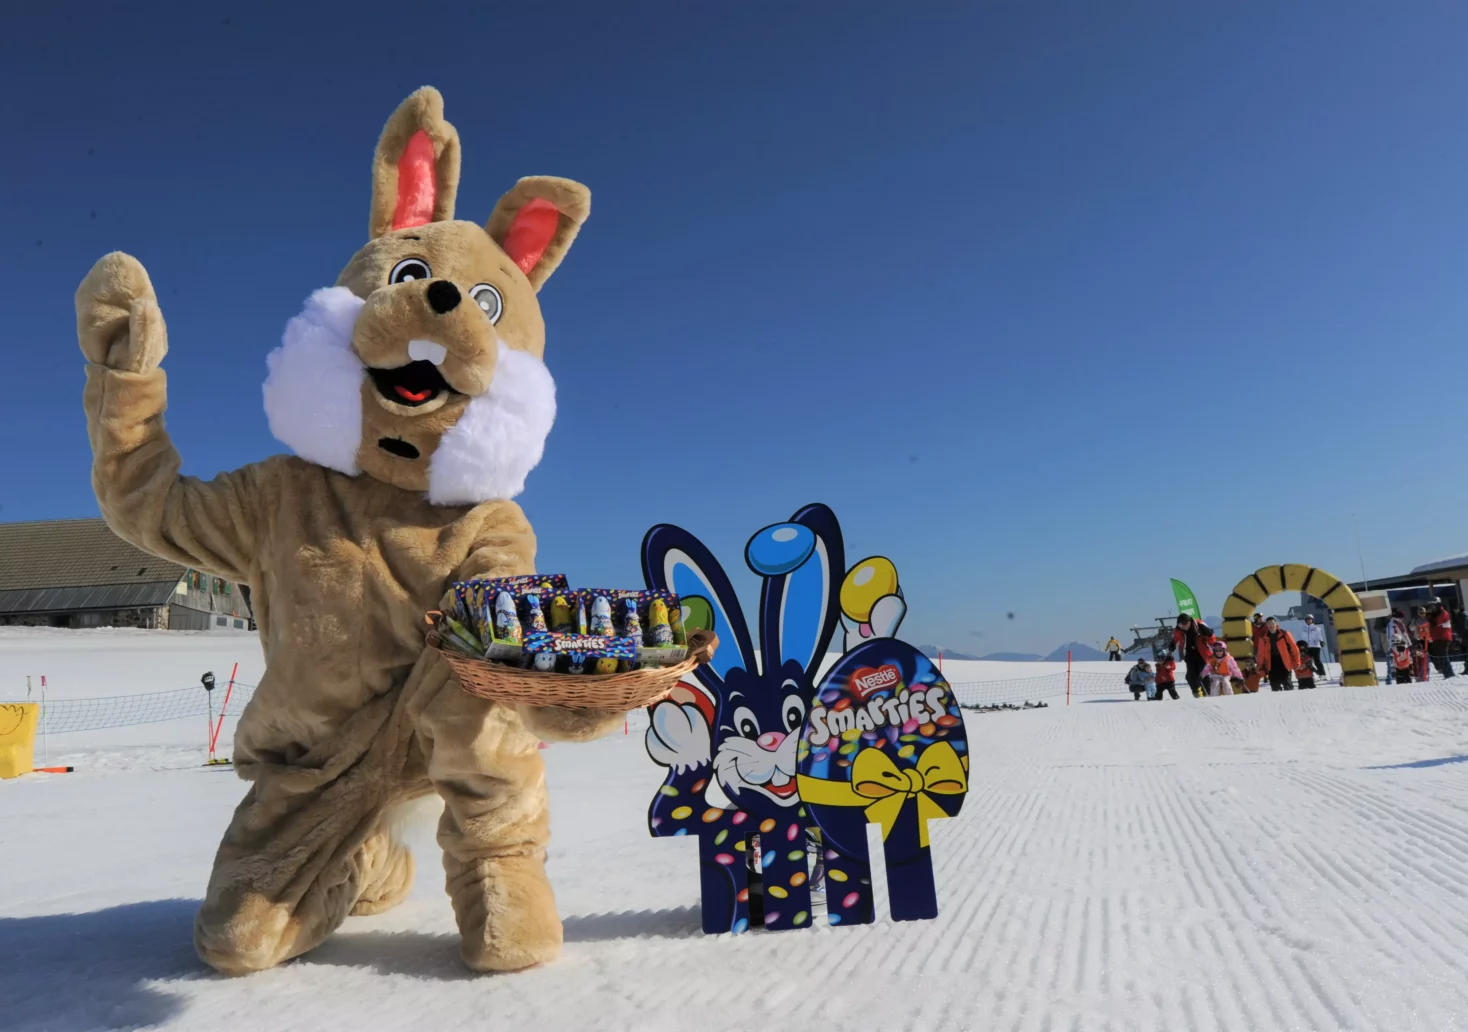 Osterhase auf Skiern: Hier können Kinder im Schnee ein Osternest suchen